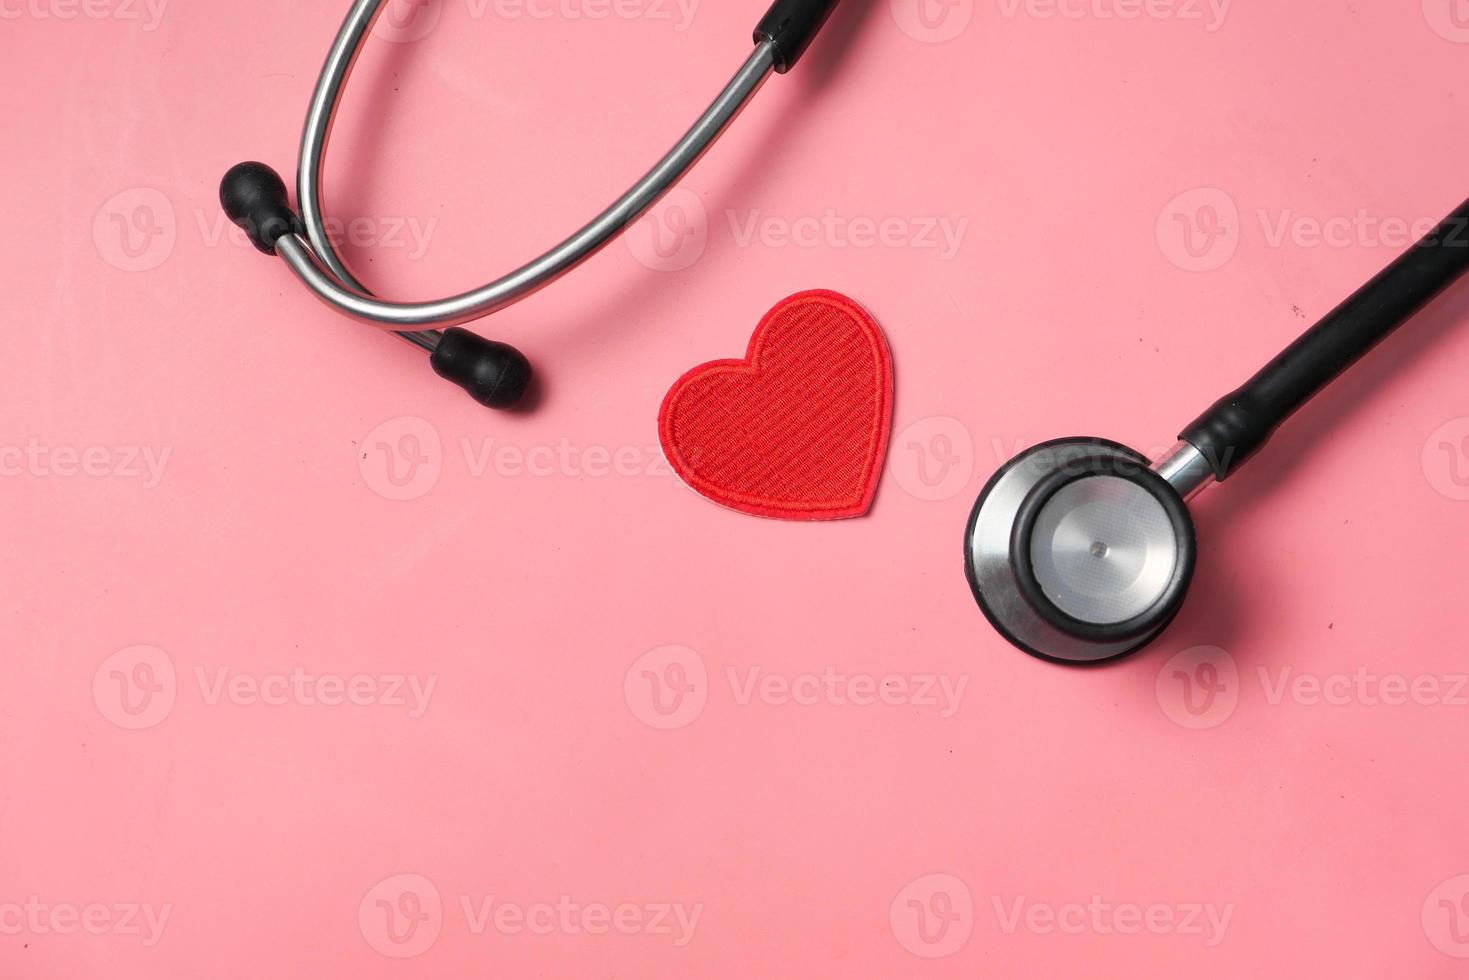 hjärtformad symbol och stetoskop på rosa bakgrund foto